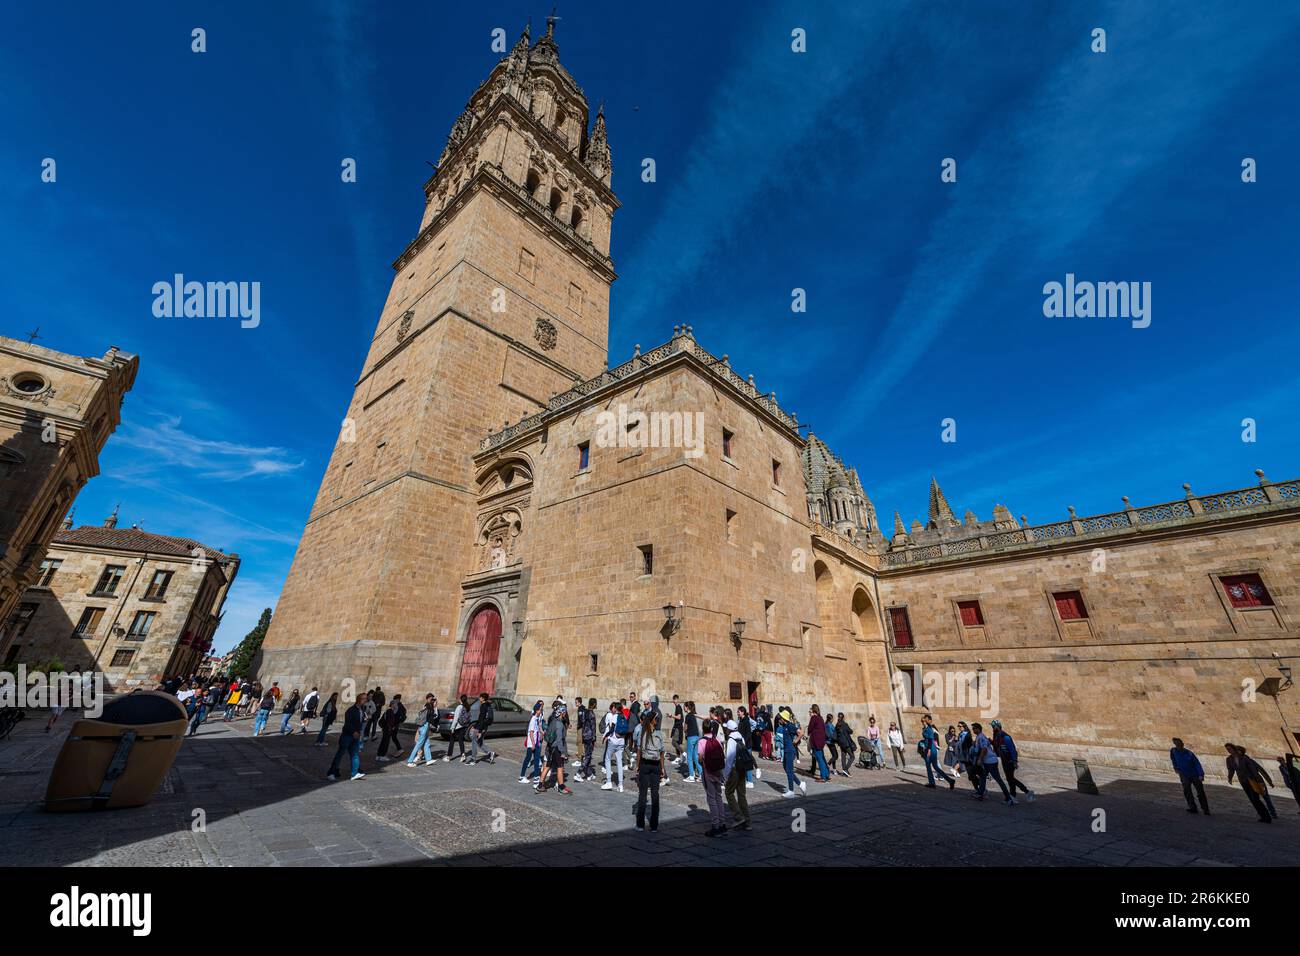 Cathédrale de Salamanque, Salamanque, site classé au patrimoine mondial de l'UNESCO, Castille et Leon, Espagne, Europe Banque D'Images